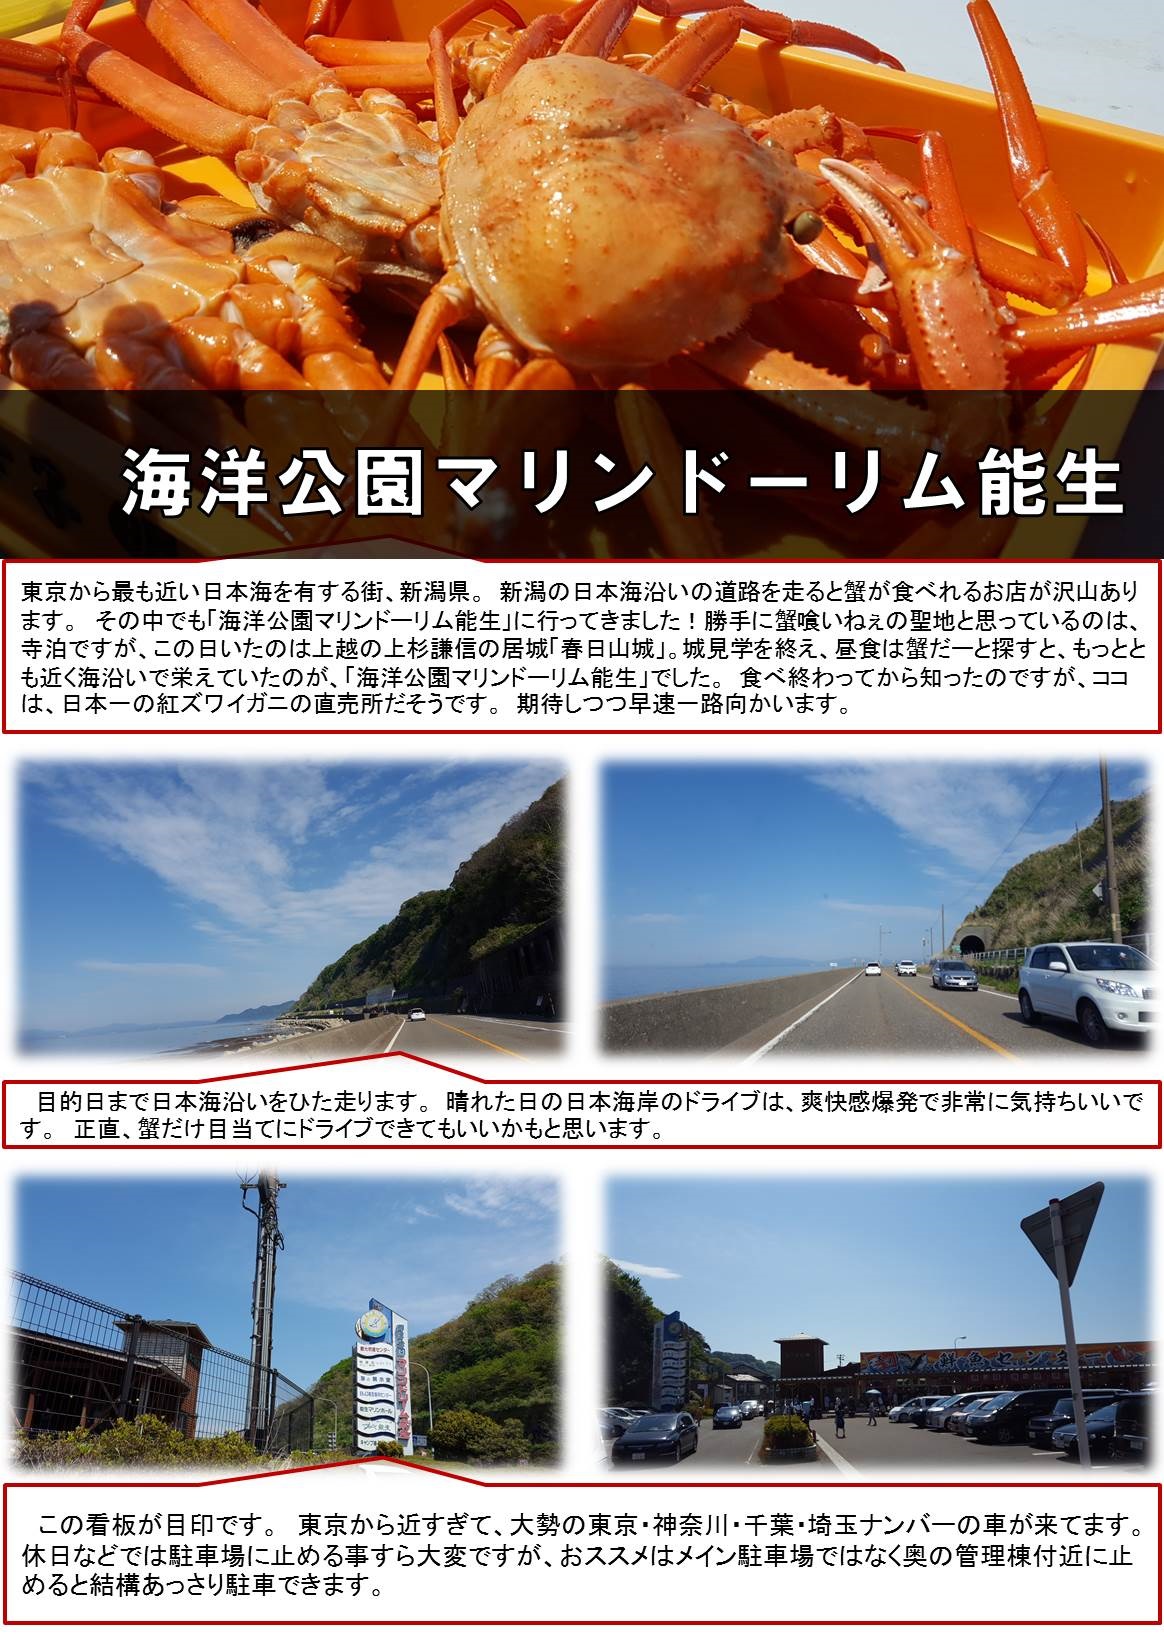 東京から最も近い日本海を有する街、新潟県。　新潟の日本海沿いの道路を走ると蟹が食べれるお店が沢山あります。　その中でも「海洋公園マリンドーリム能生」に行ってきました！勝手に蟹喰いねぇの聖地と思っているのは、寺泊ですが、この日いたのは上越の上杉謙信の居城「春日山城」。城見学を終え、昼食は蟹だーと探すと、もっととも近く海沿いで栄えていたのが、「海洋公園マリンドーリム能生」でした。　食べ終わってから知ったのですが、ココは、日本一の紅ズワイガニの直売所だそうです。　期待しつつ早速一路向かいます。　目的日まで日本海沿いをひた走ります。　晴れた日の日本海岸のドライブは、爽快感爆発で非常に気持ちいいです。　正直、蟹だけ目当てにドライブできてもいいかもと思います。 　この看板が目印です。　東京から近すぎて、大勢の東京・神奈川・千葉・埼玉ナンバーの車が来てます。　休日などでは駐車場に止める事すら大変ですが、おススメはメイン駐車場ではなく奥の管理棟付近に止めると結構あっさり駐車できます。